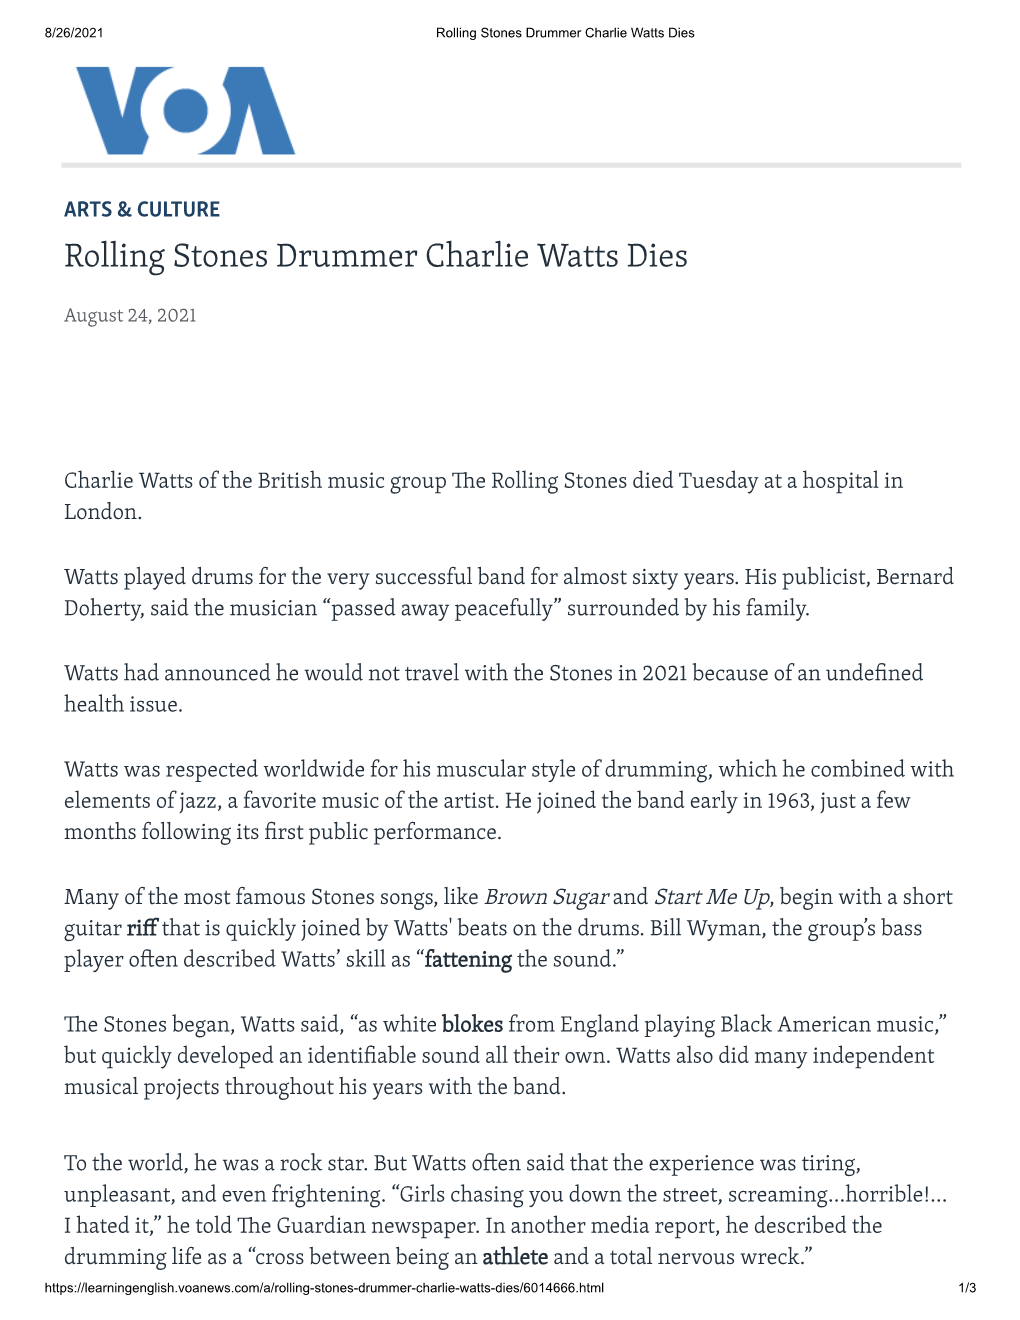 Rolling Stones Drummer Charlie Watts Dies